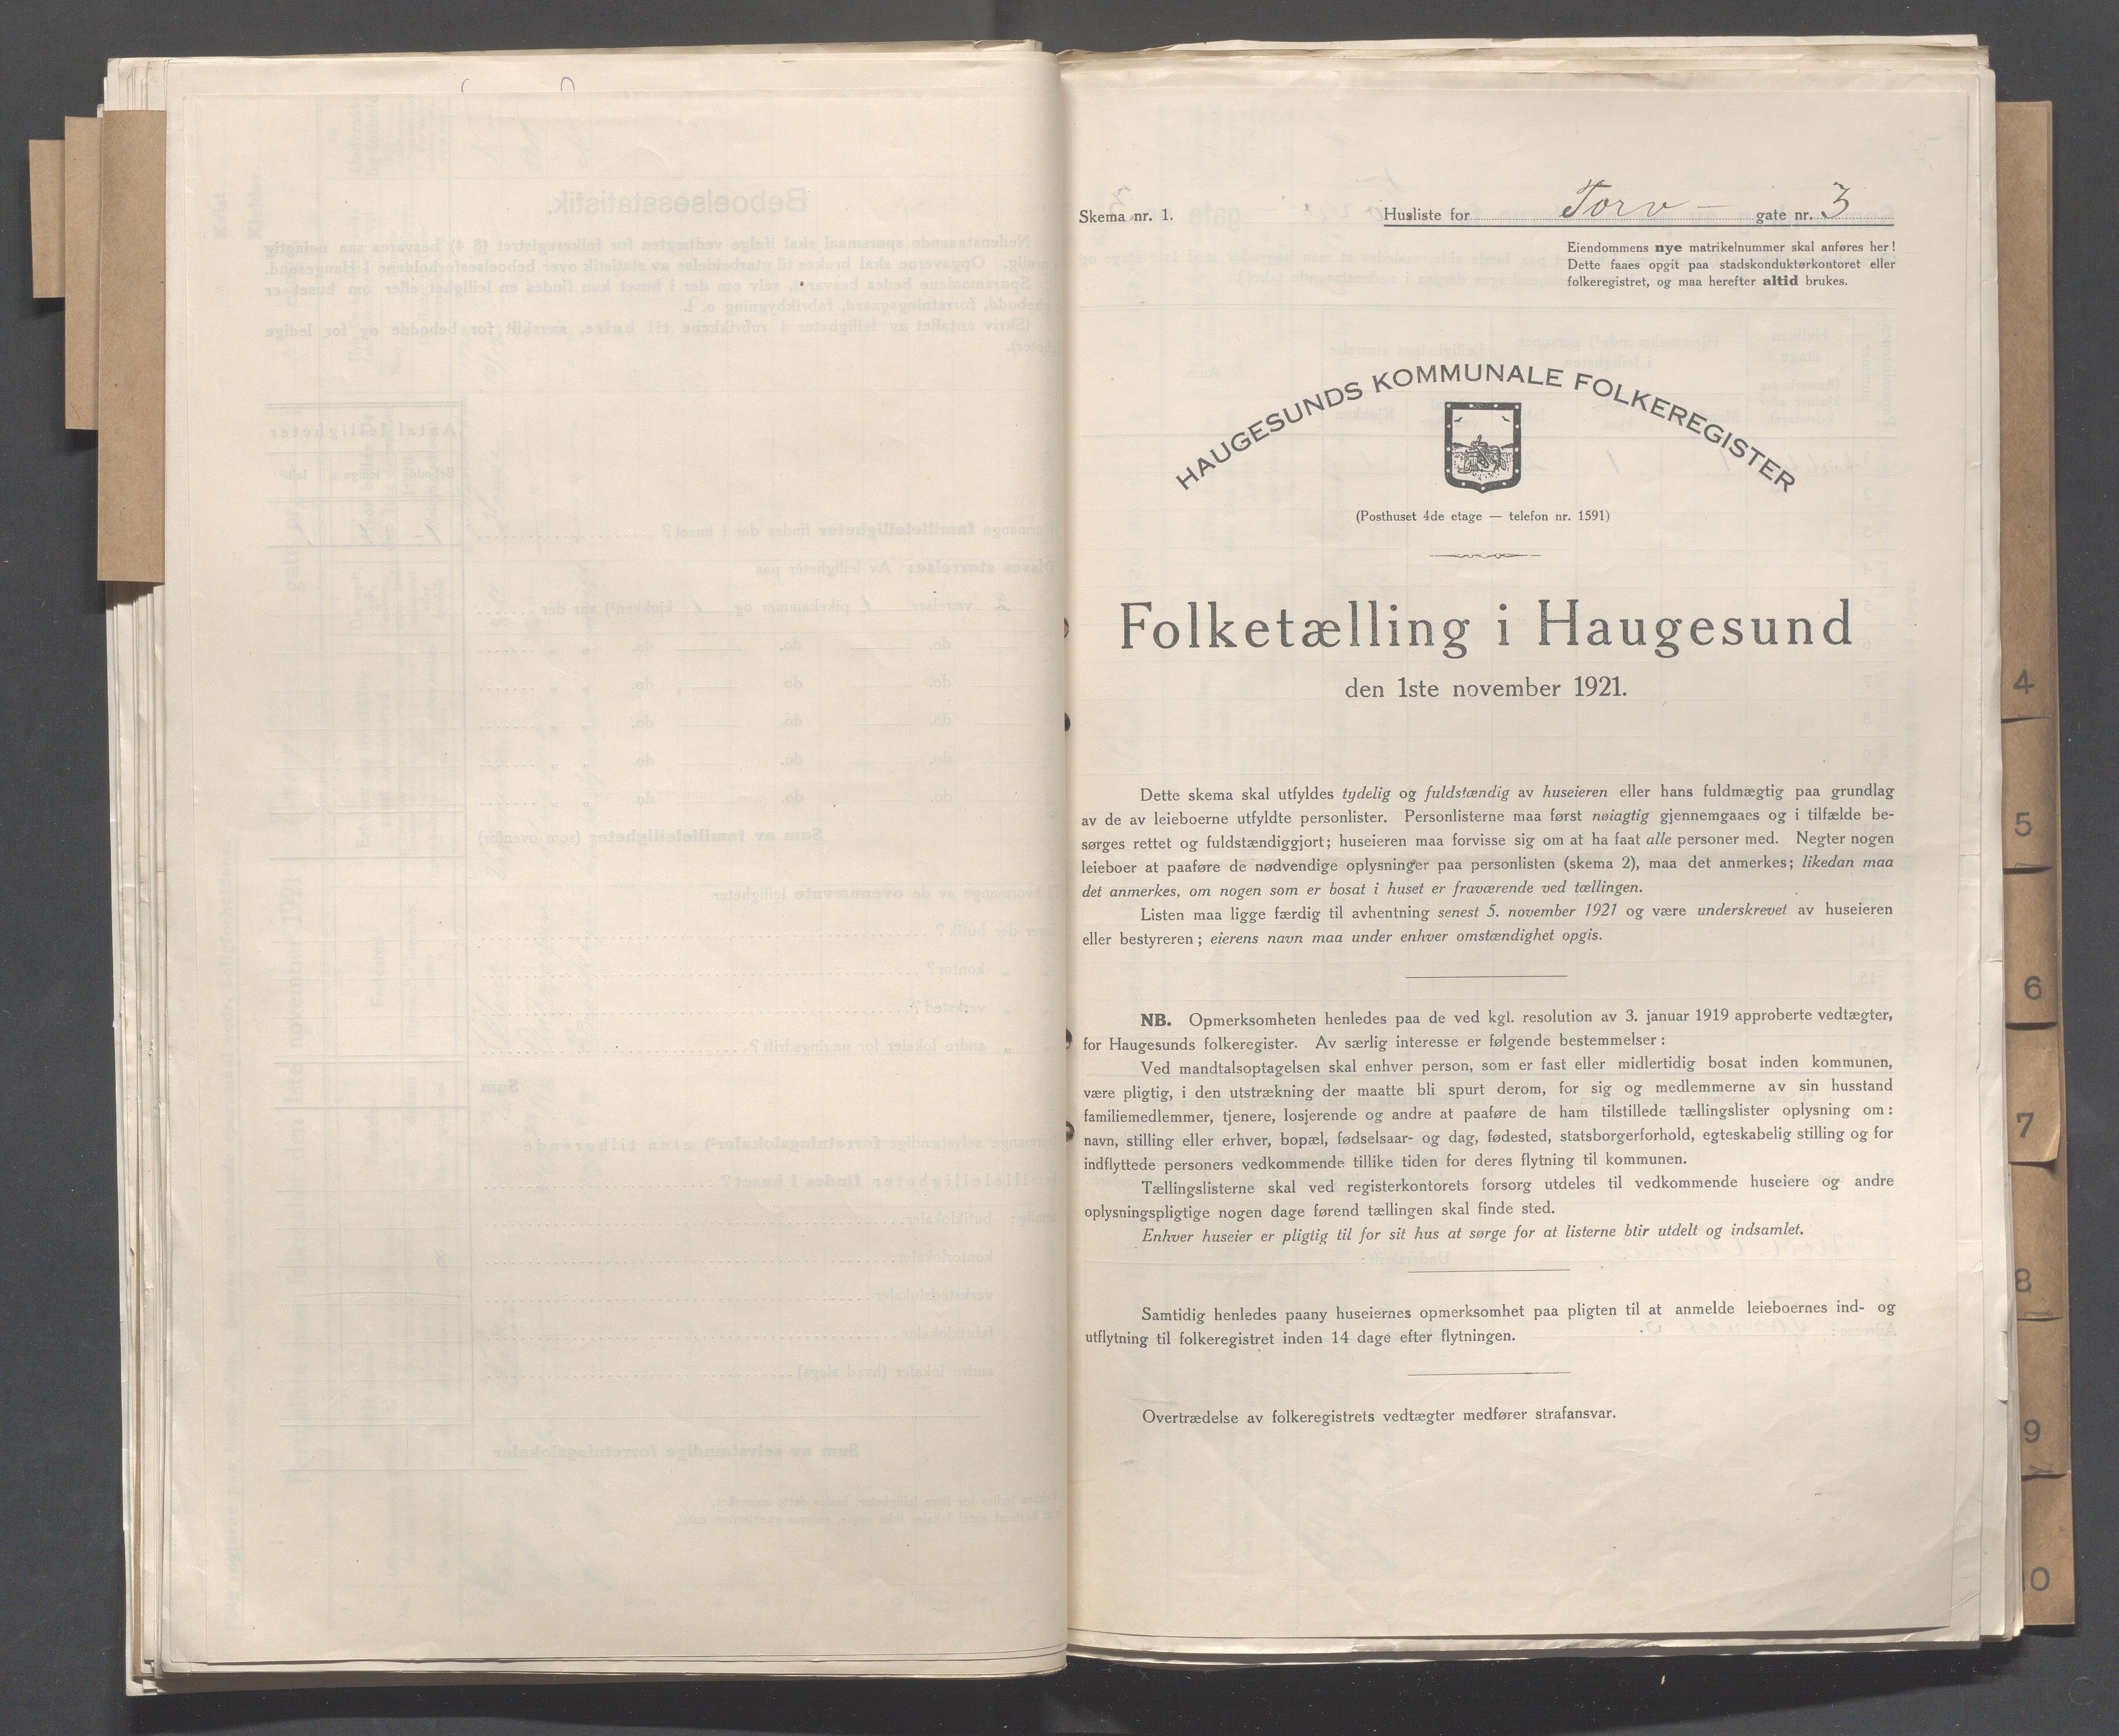 IKAR, Local census 1.11.1921 for Haugesund, 1921, p. 5443